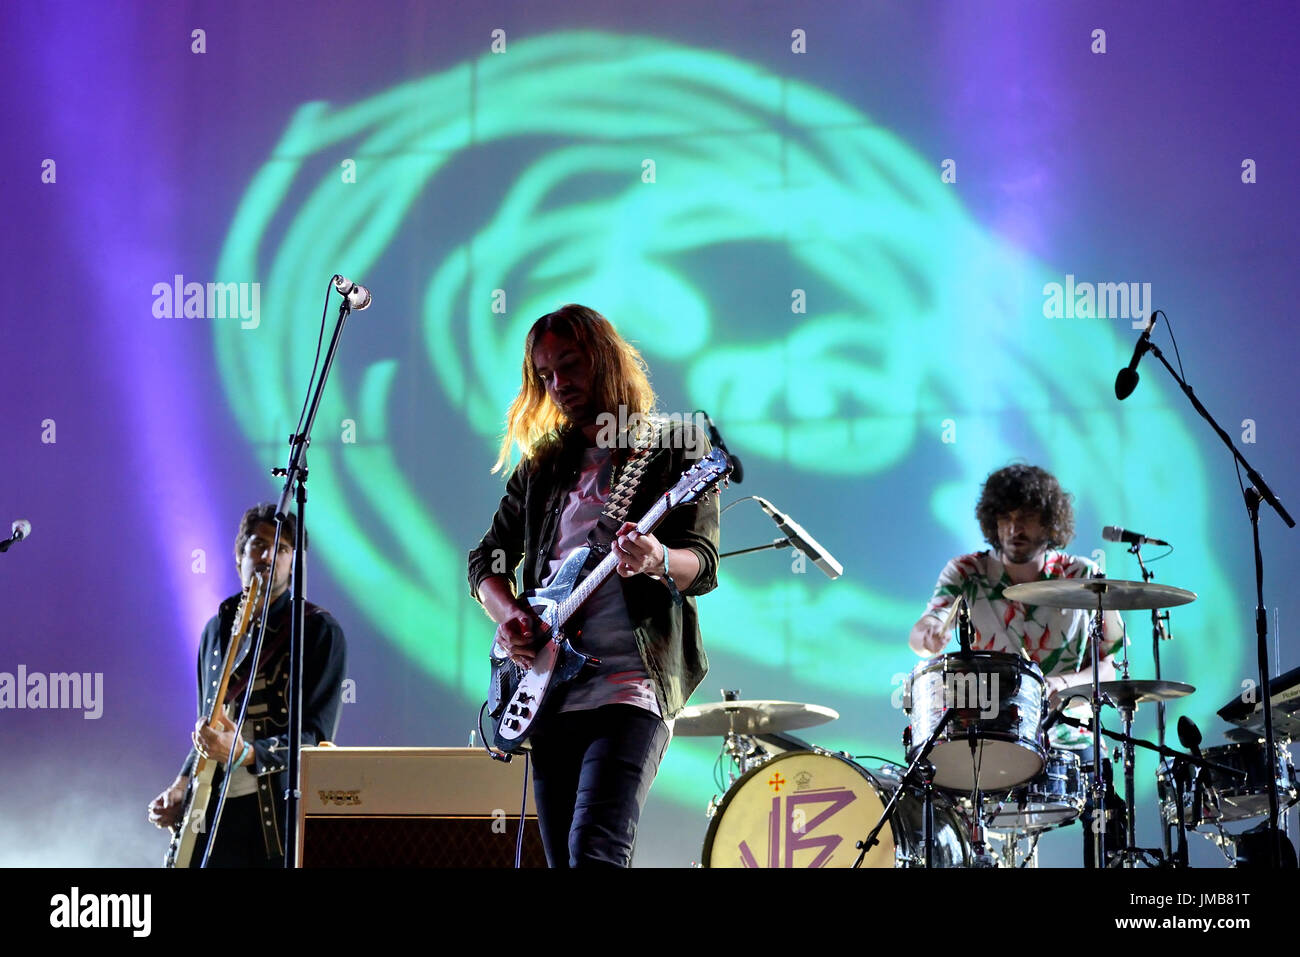 Barcelone - 2 juin : Tame Impala (groupe psychédélique) produisent en concert au Primavera Sound Festival 2016 le 2 juin 2016 à Barcelone, Espagne. Banque D'Images